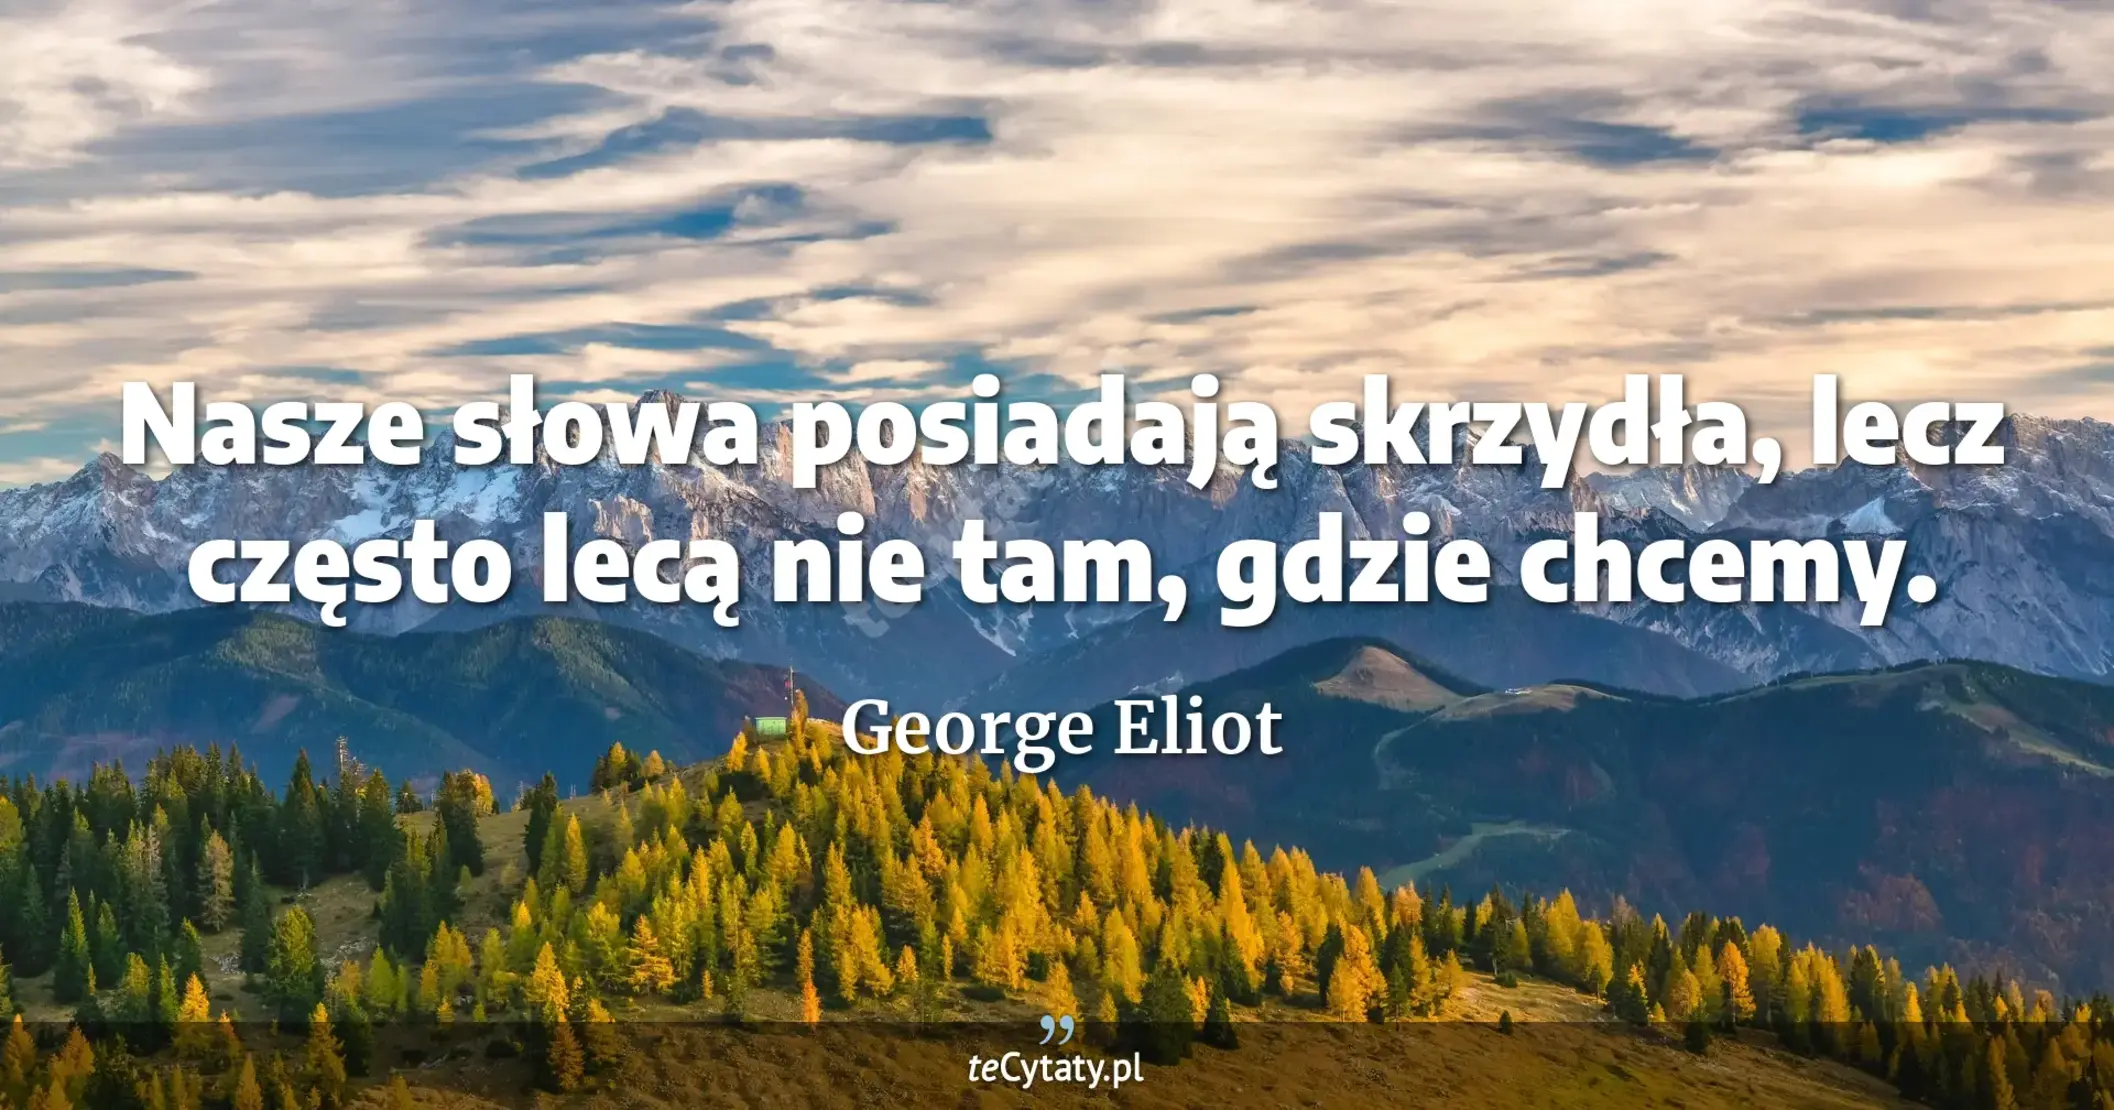 Nasze słowa posiadają skrzydła, lecz często lecą nie tam, gdzie chcemy. - George Eliot